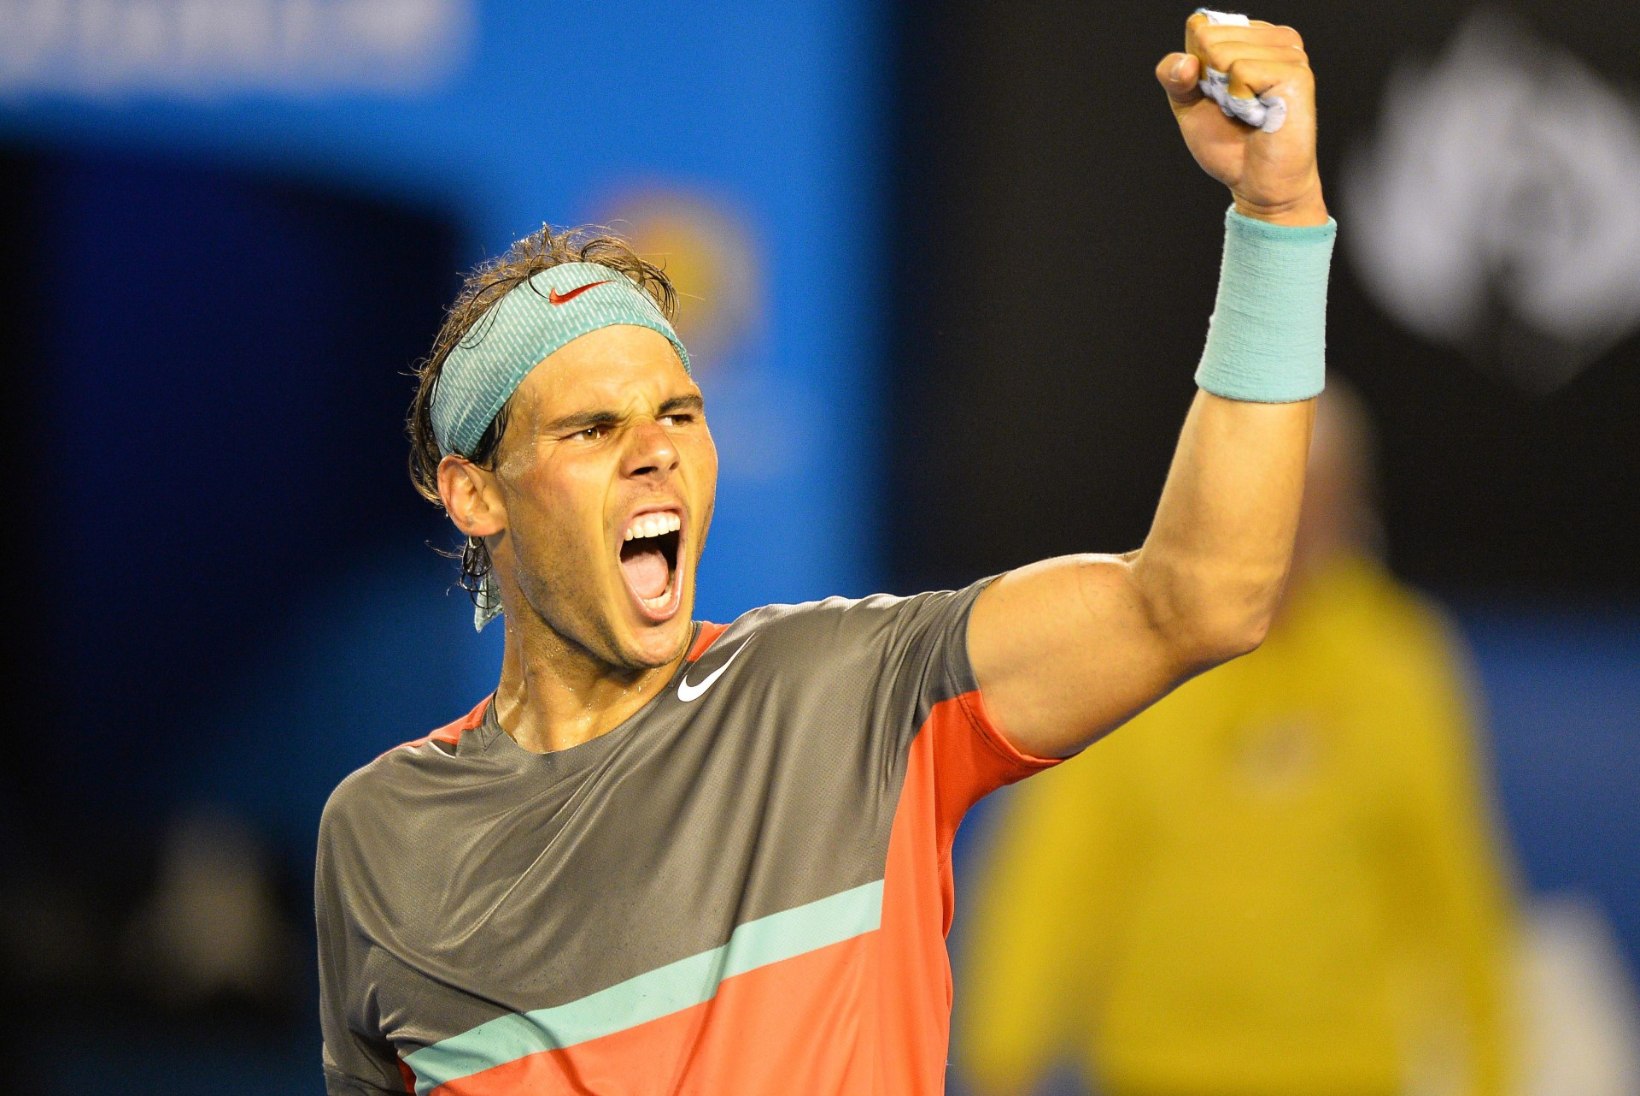 TÕESTUS: Nadal on parem kui Federer. Vähemalt omavahel!